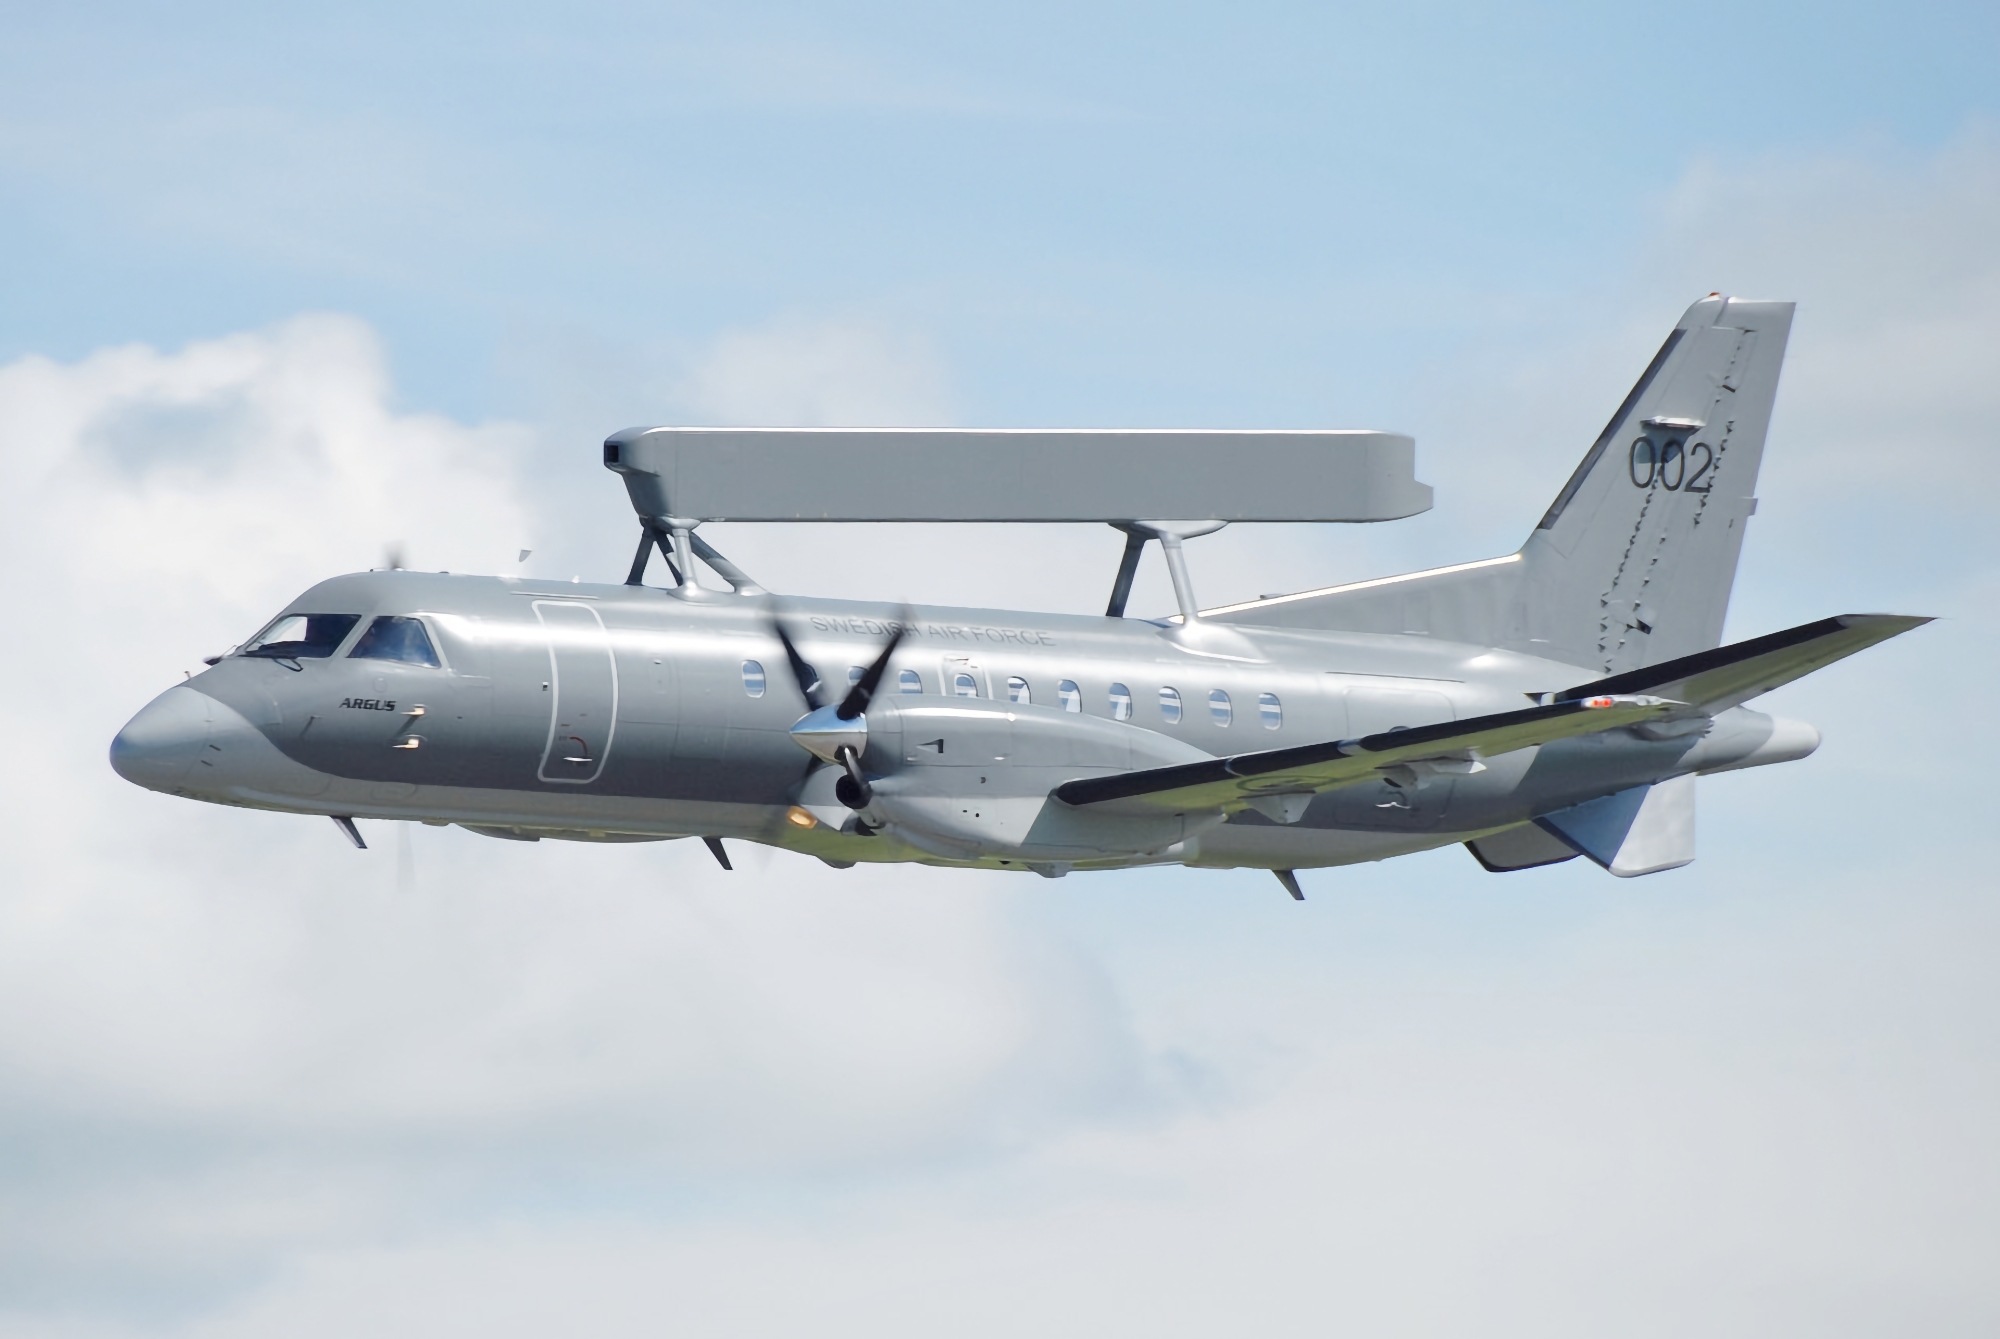 Contratto del valore di 58.000.000 di dollari: la Polonia acquista due Saab 340B AEW-300 per il rilevamento radar a lungo raggio